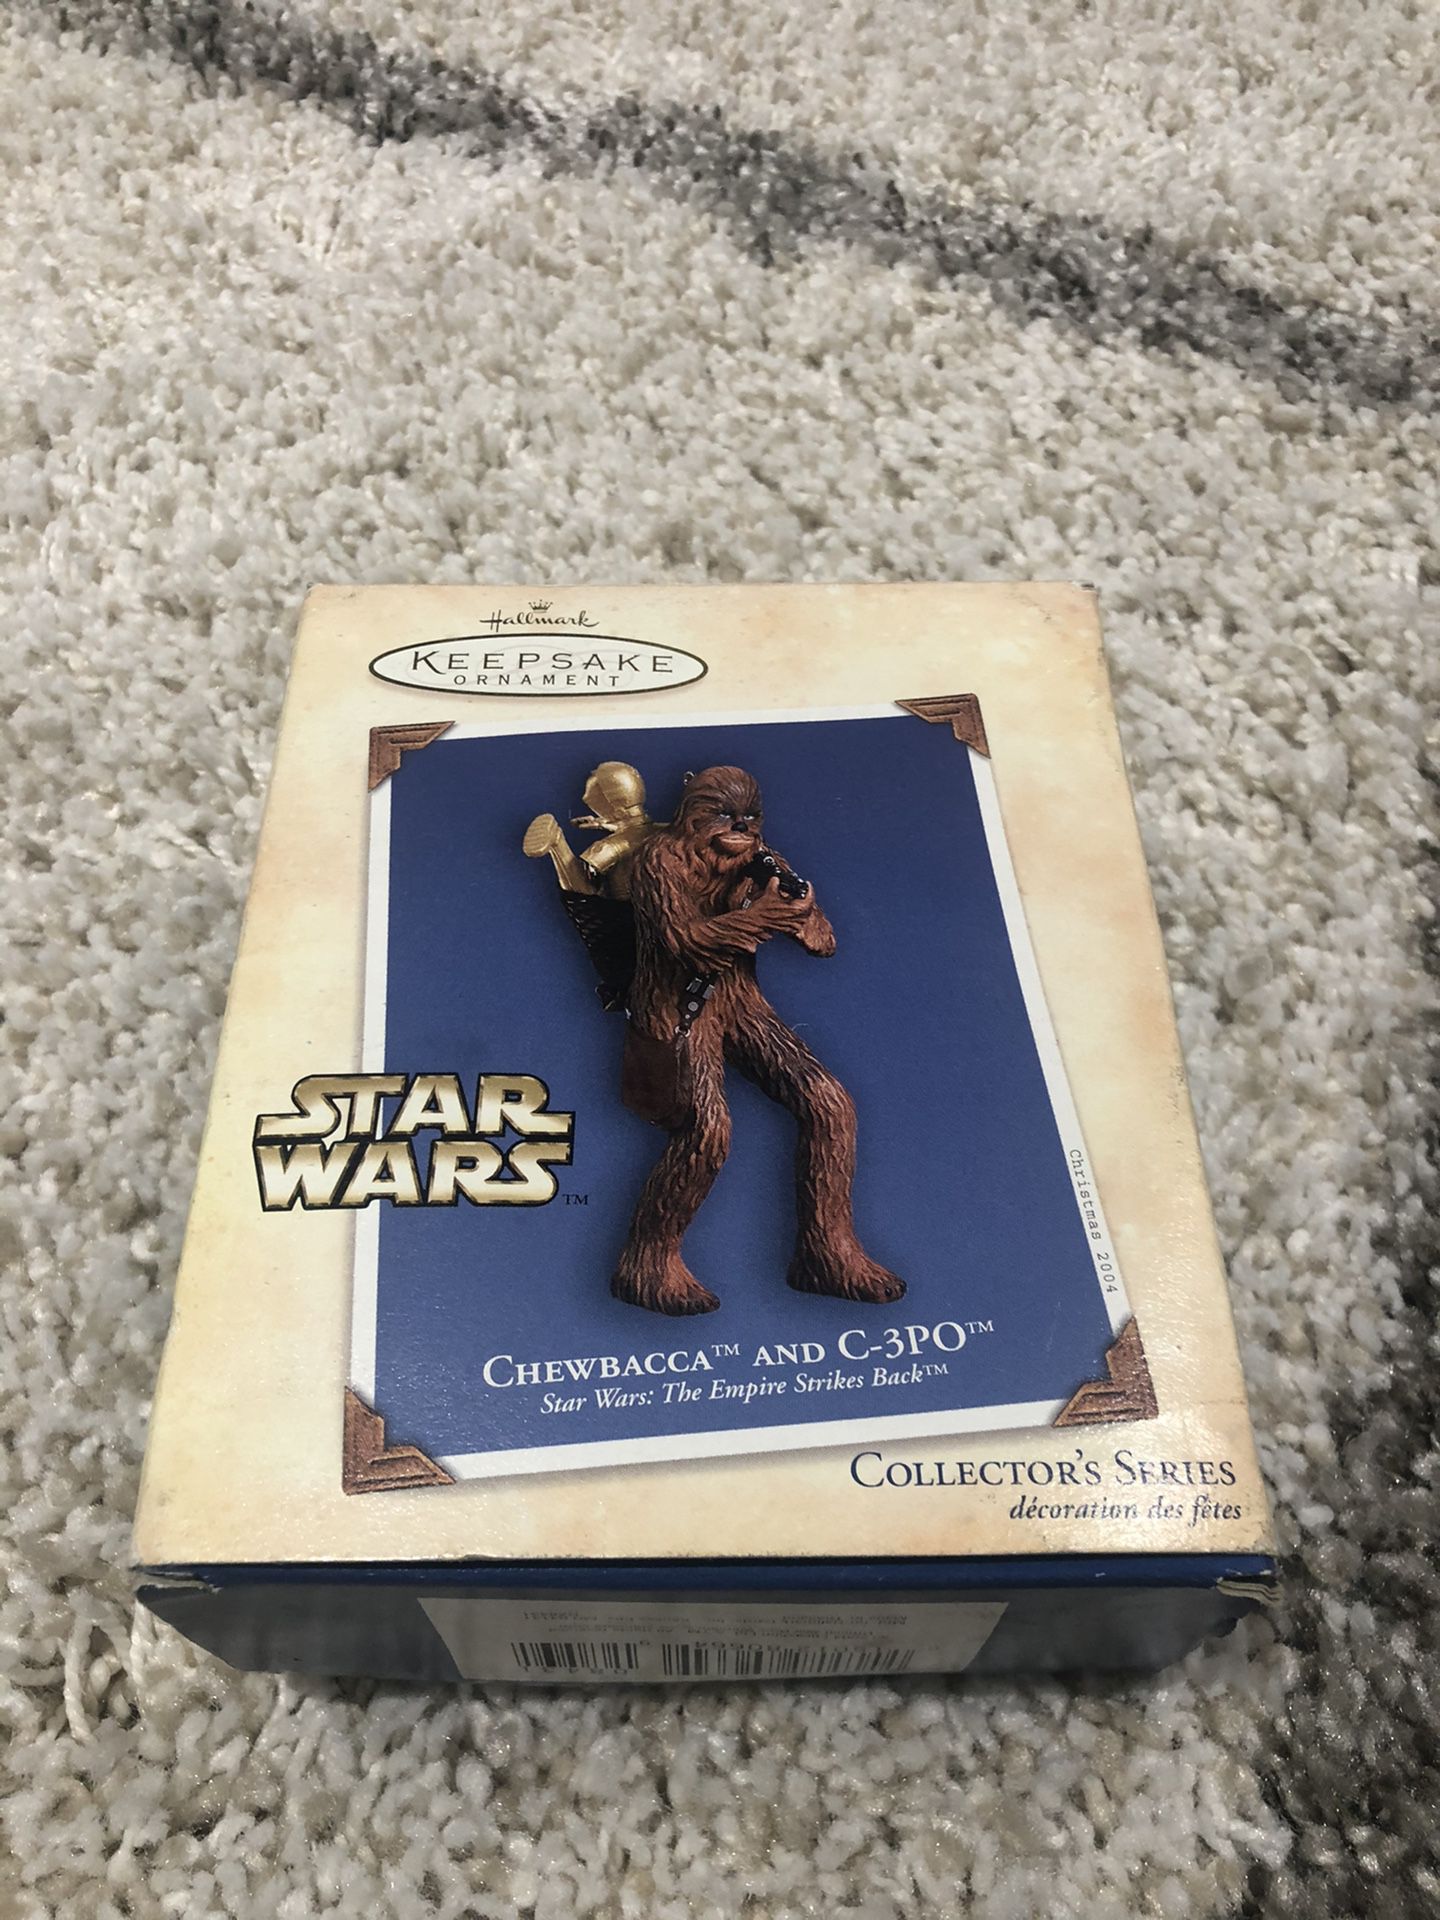 Chewbacca and C-3PO Hallmark ornament 2004